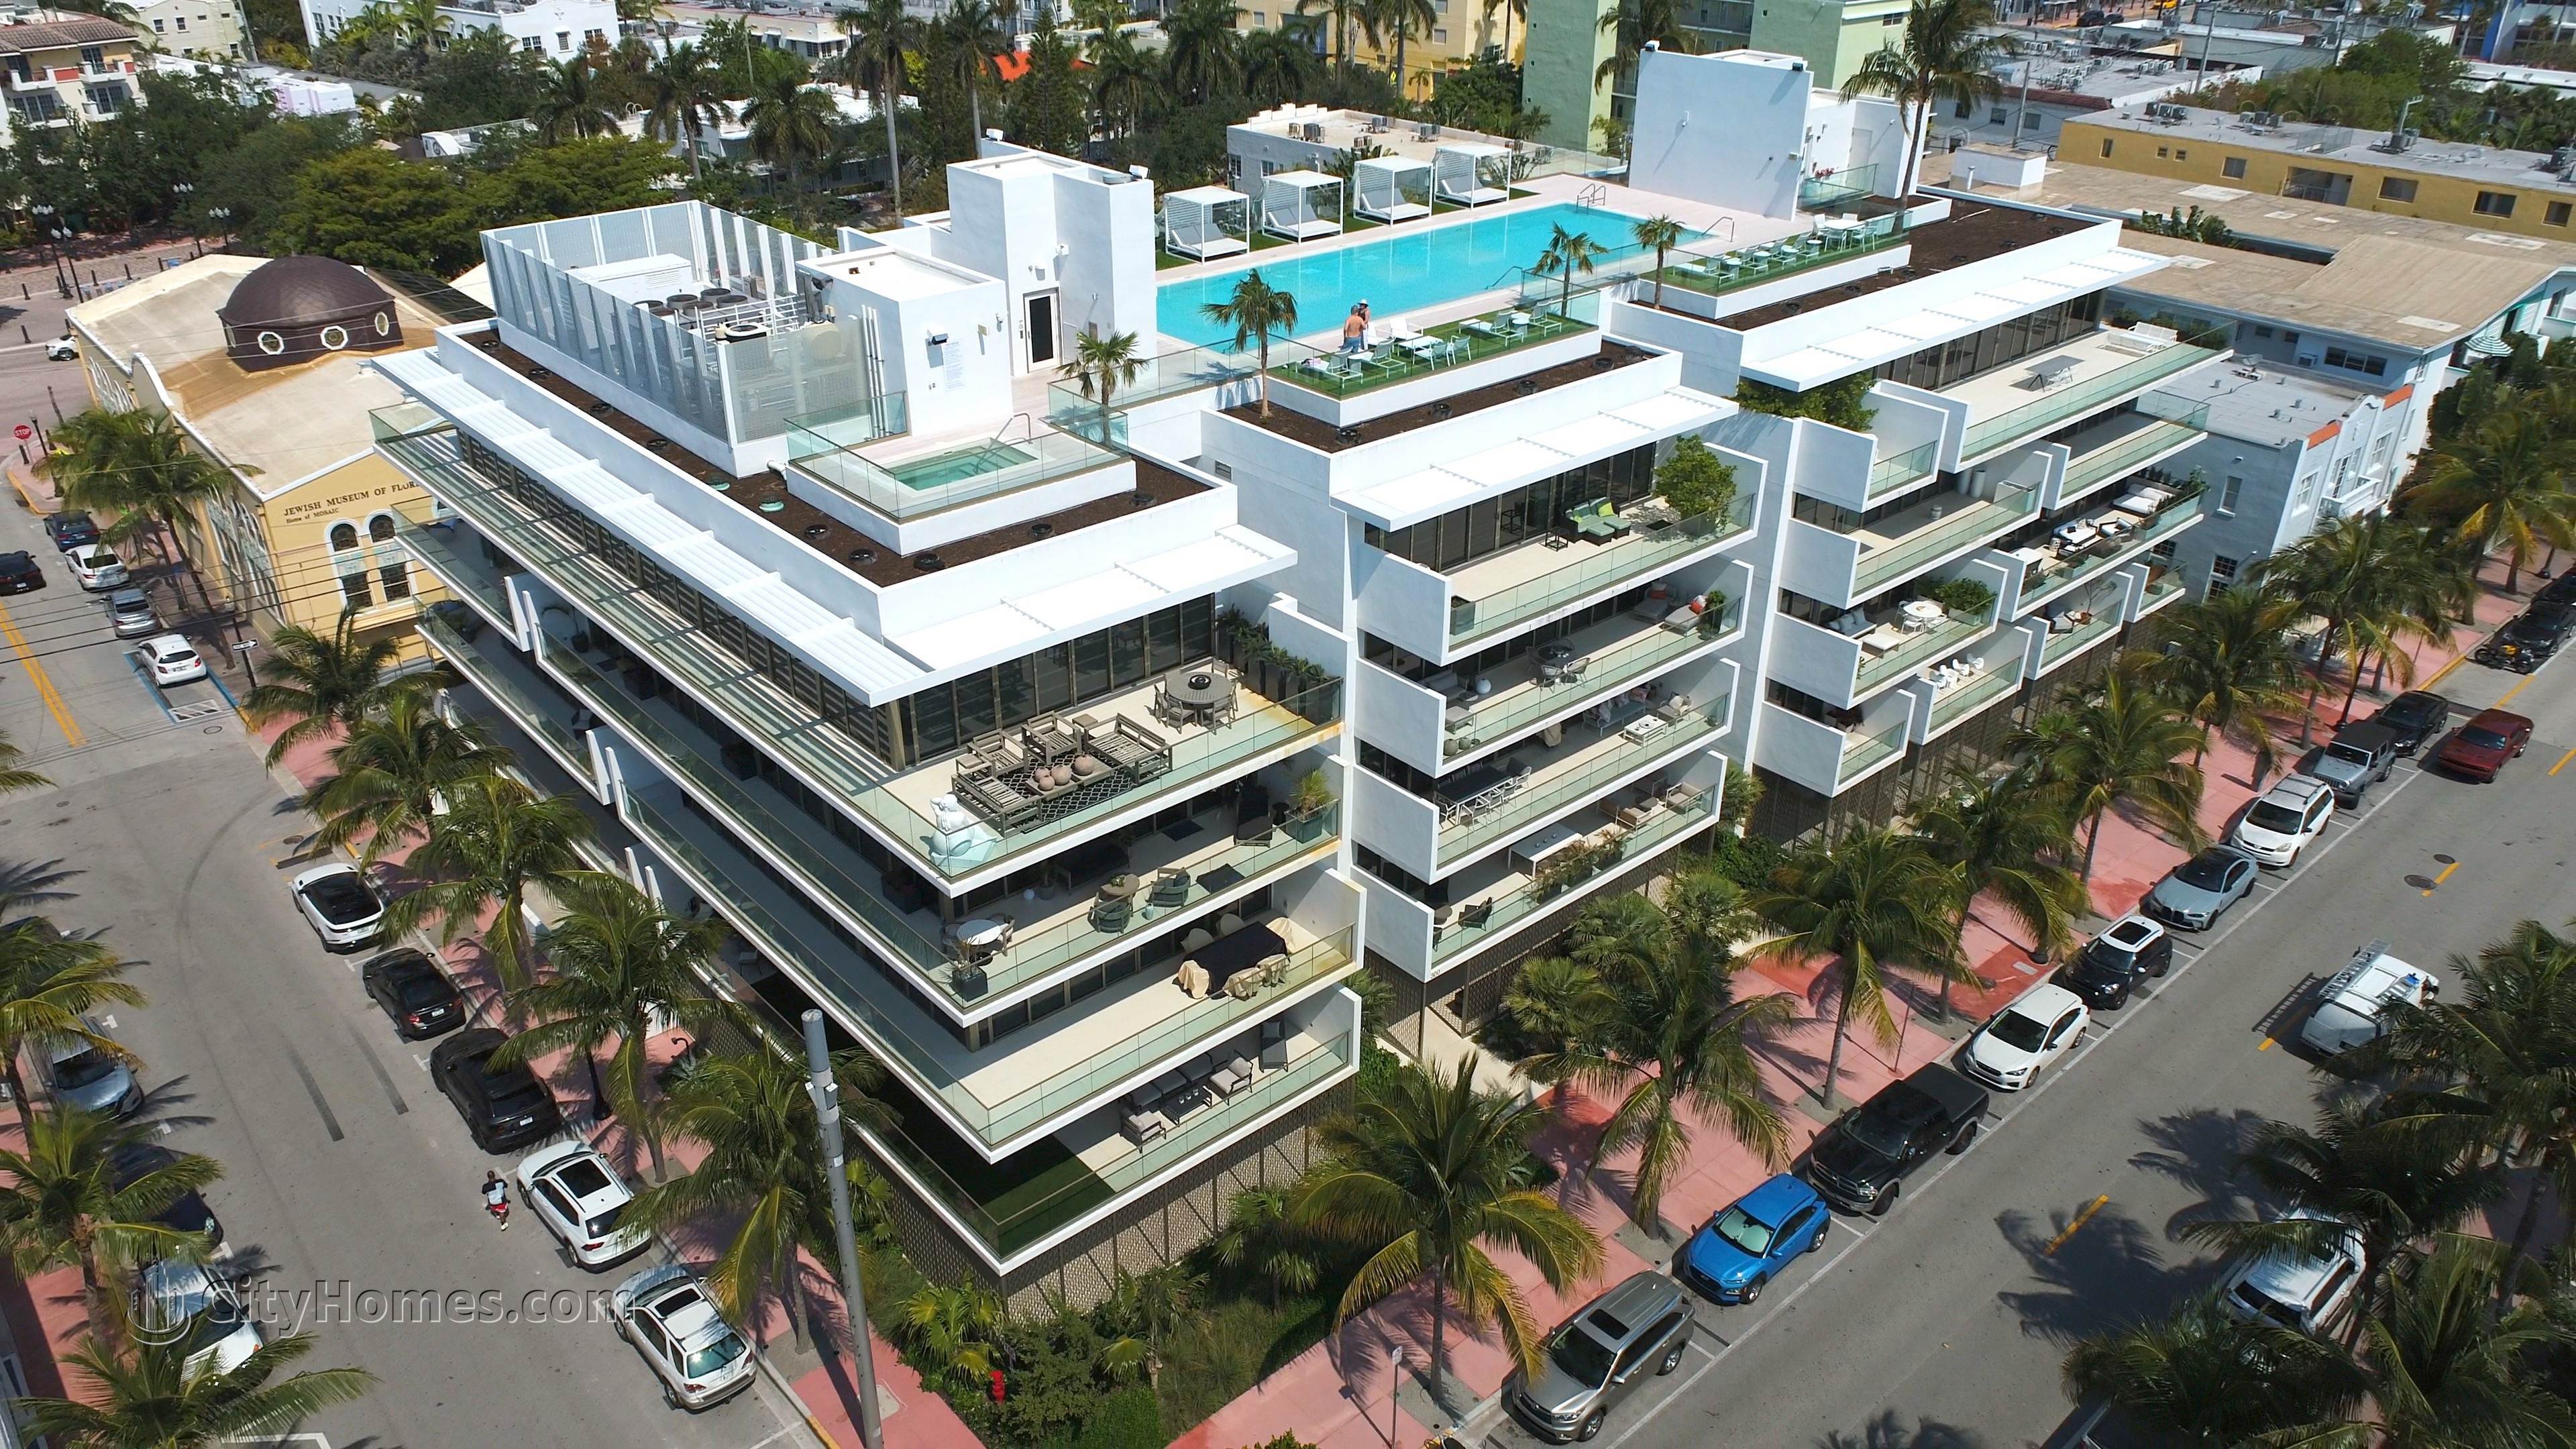 300 COLLINS  edificio a 300 Collins Avenue, South of Fifth, Miami Beach, FL 33139